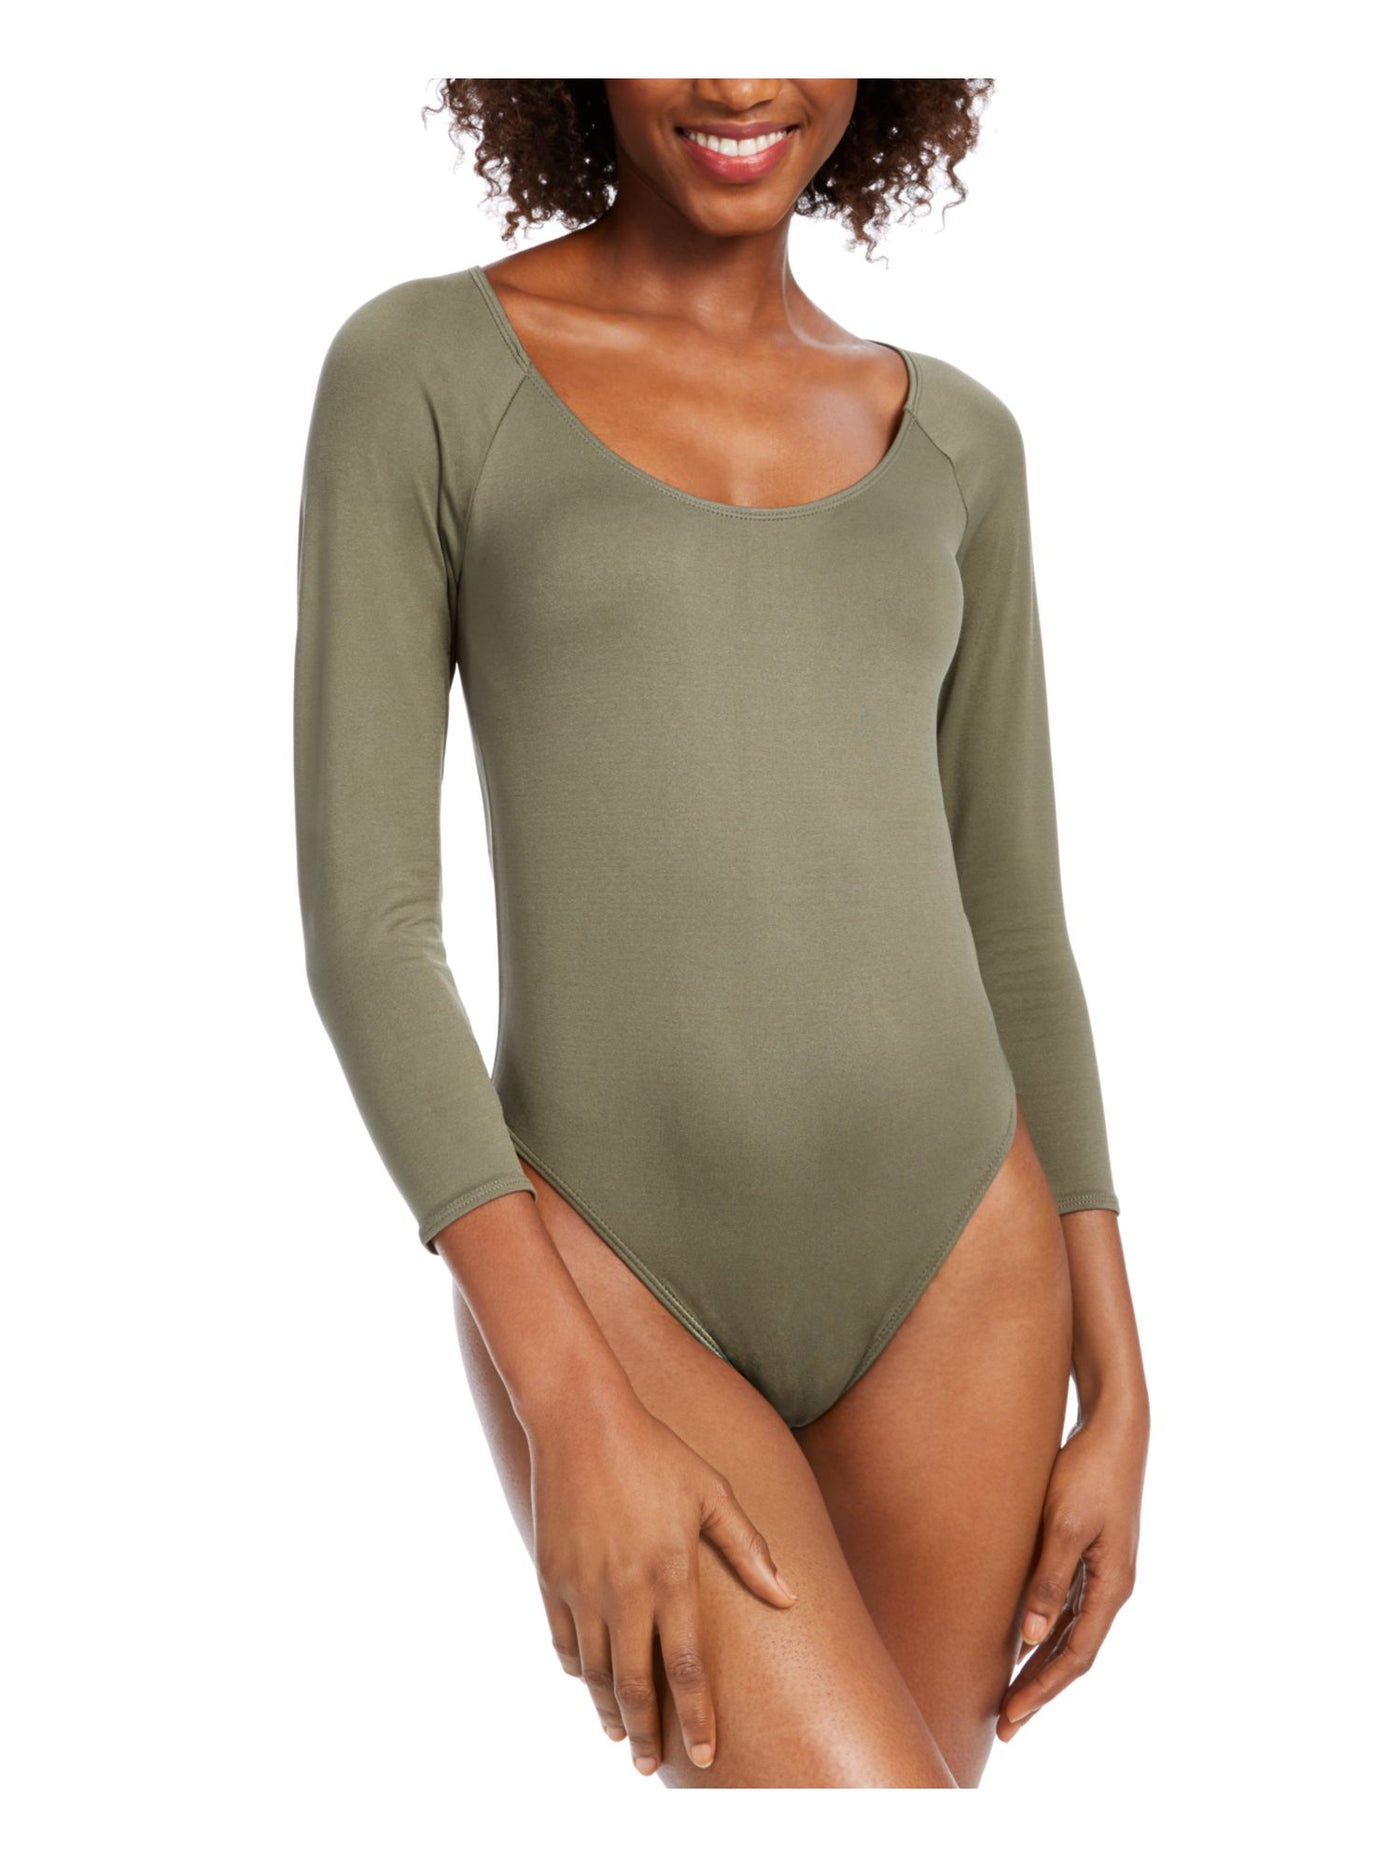 BAR III Womens Green 3/4 Sleeve Scoop Neck Body Suit Top S